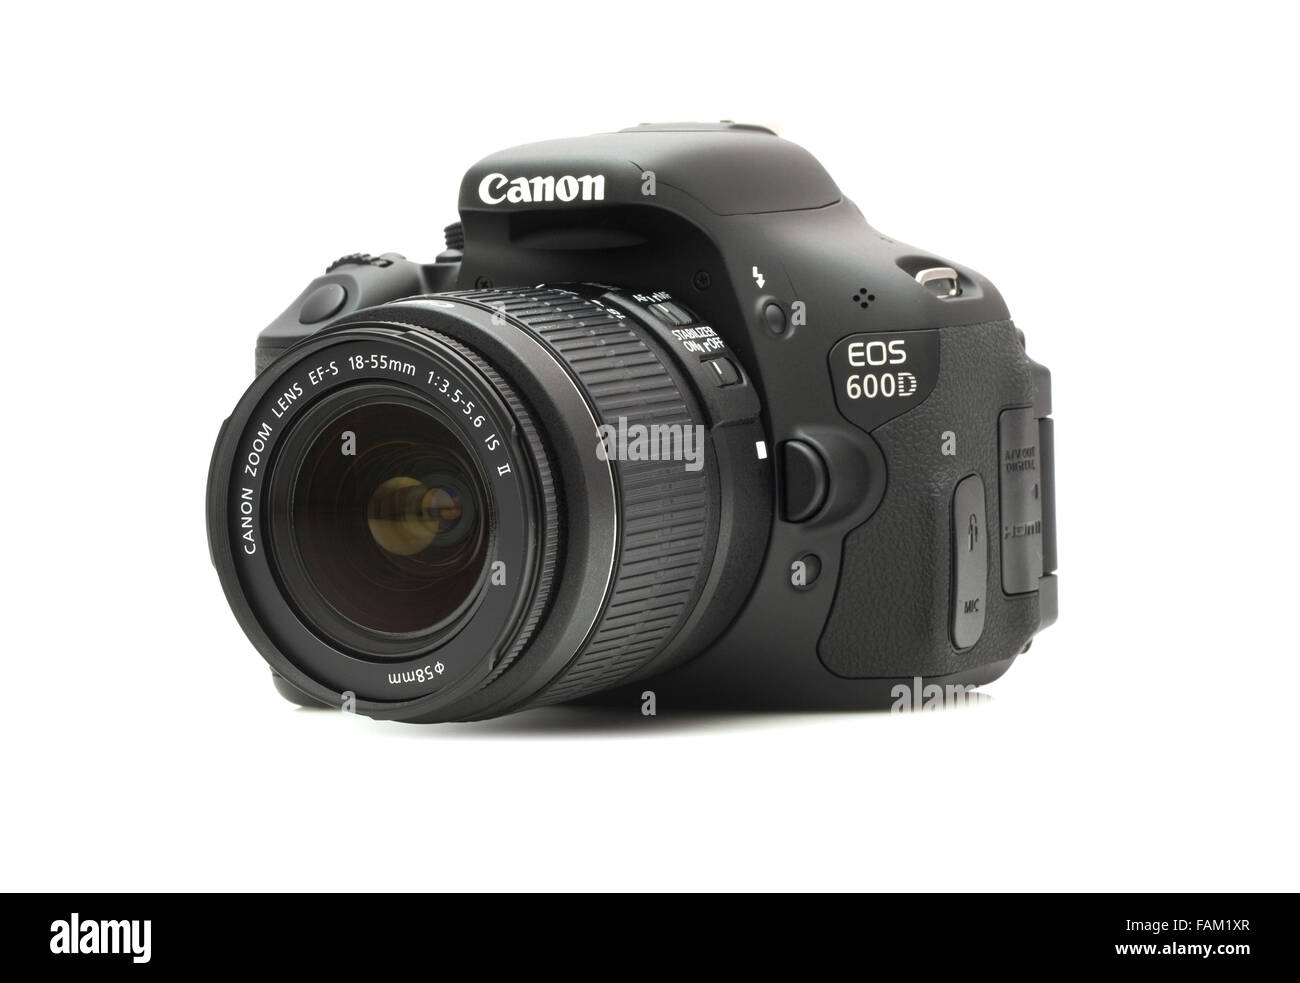 Appareil photo reflex numérique Canon 600D sur un fond blanc Banque D'Images